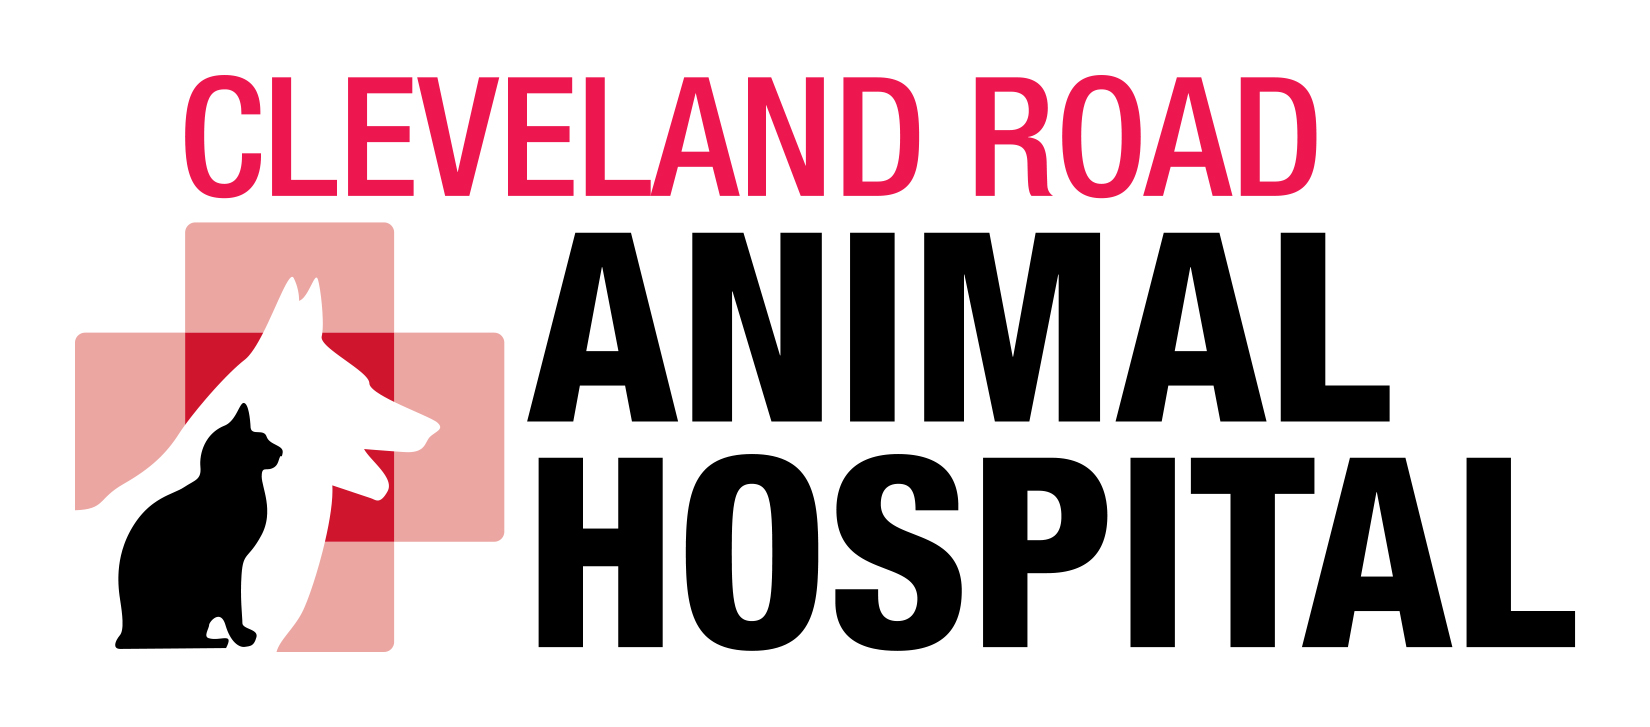 Cleveland Road Animal Hospital